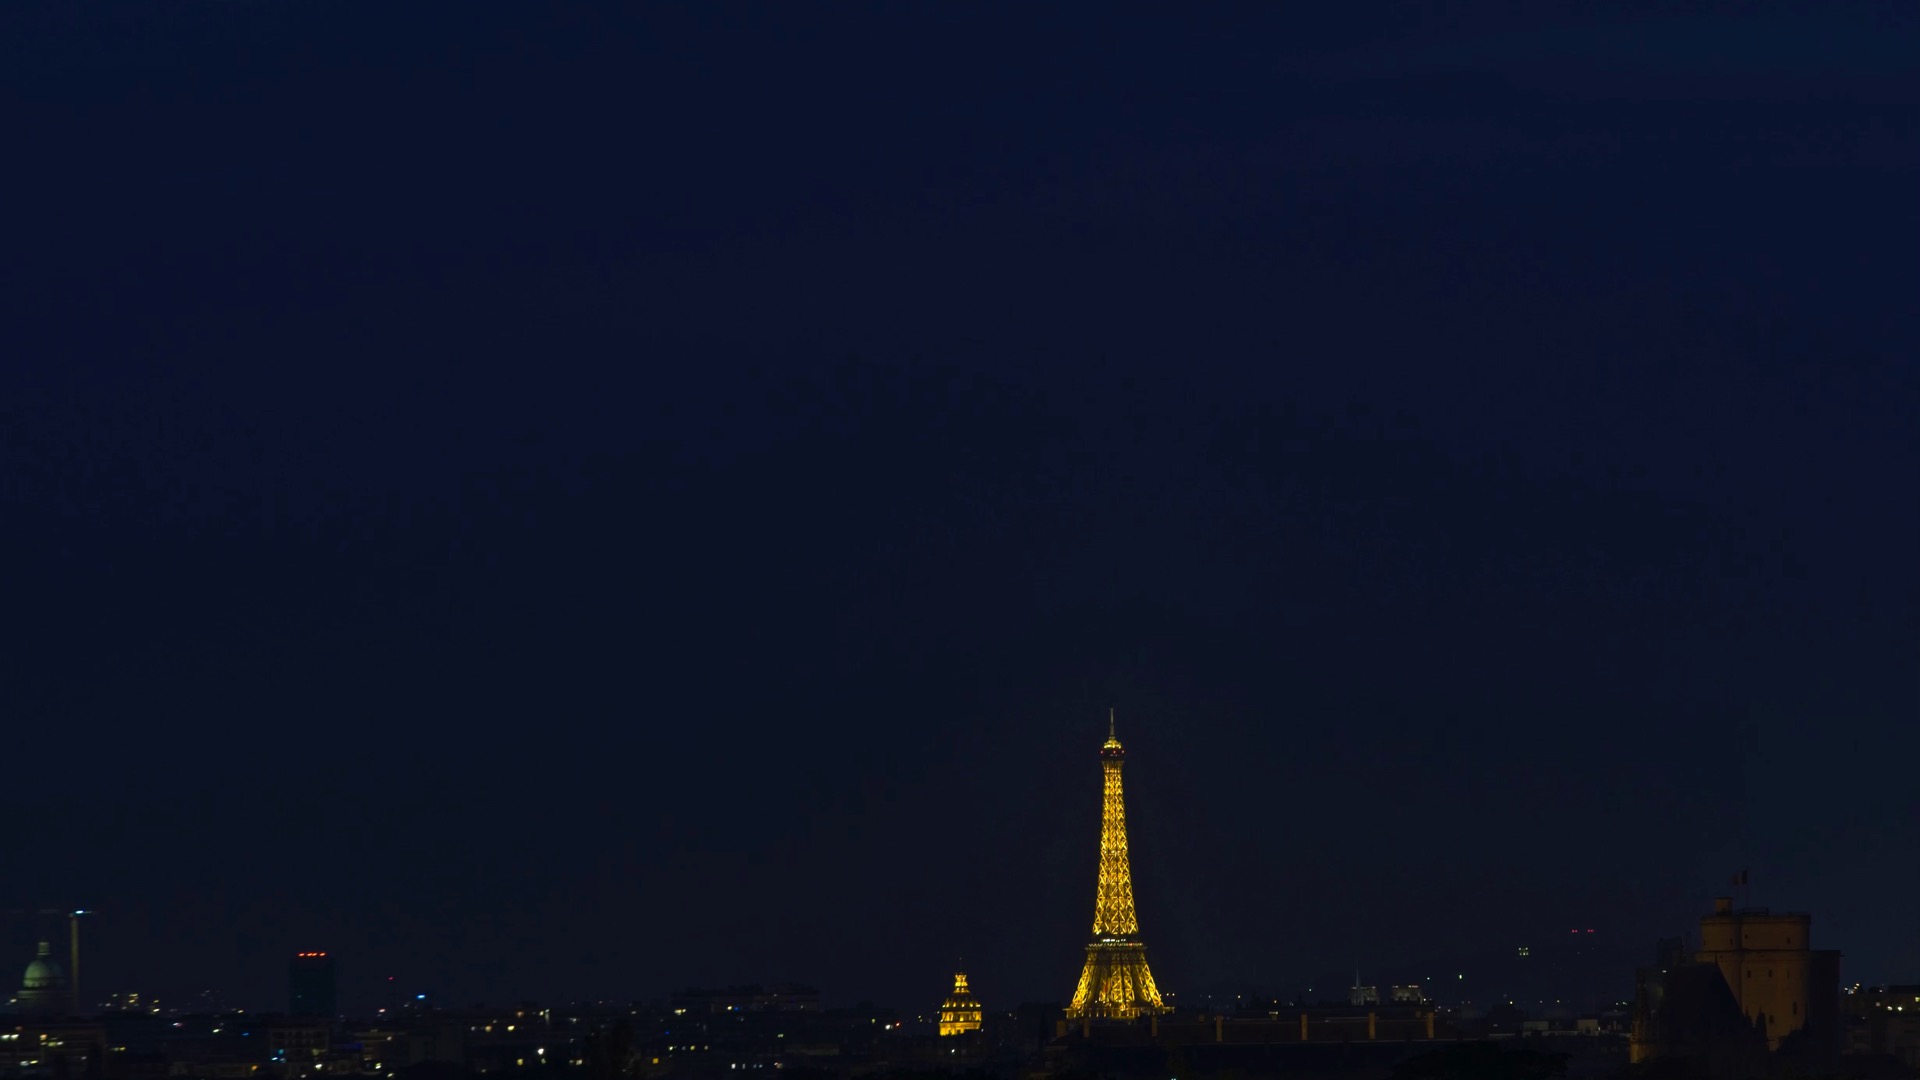 小编分享埃菲尔铁塔风景壁纸给大家,风景如画的神秘巴黎,温柔而又典雅